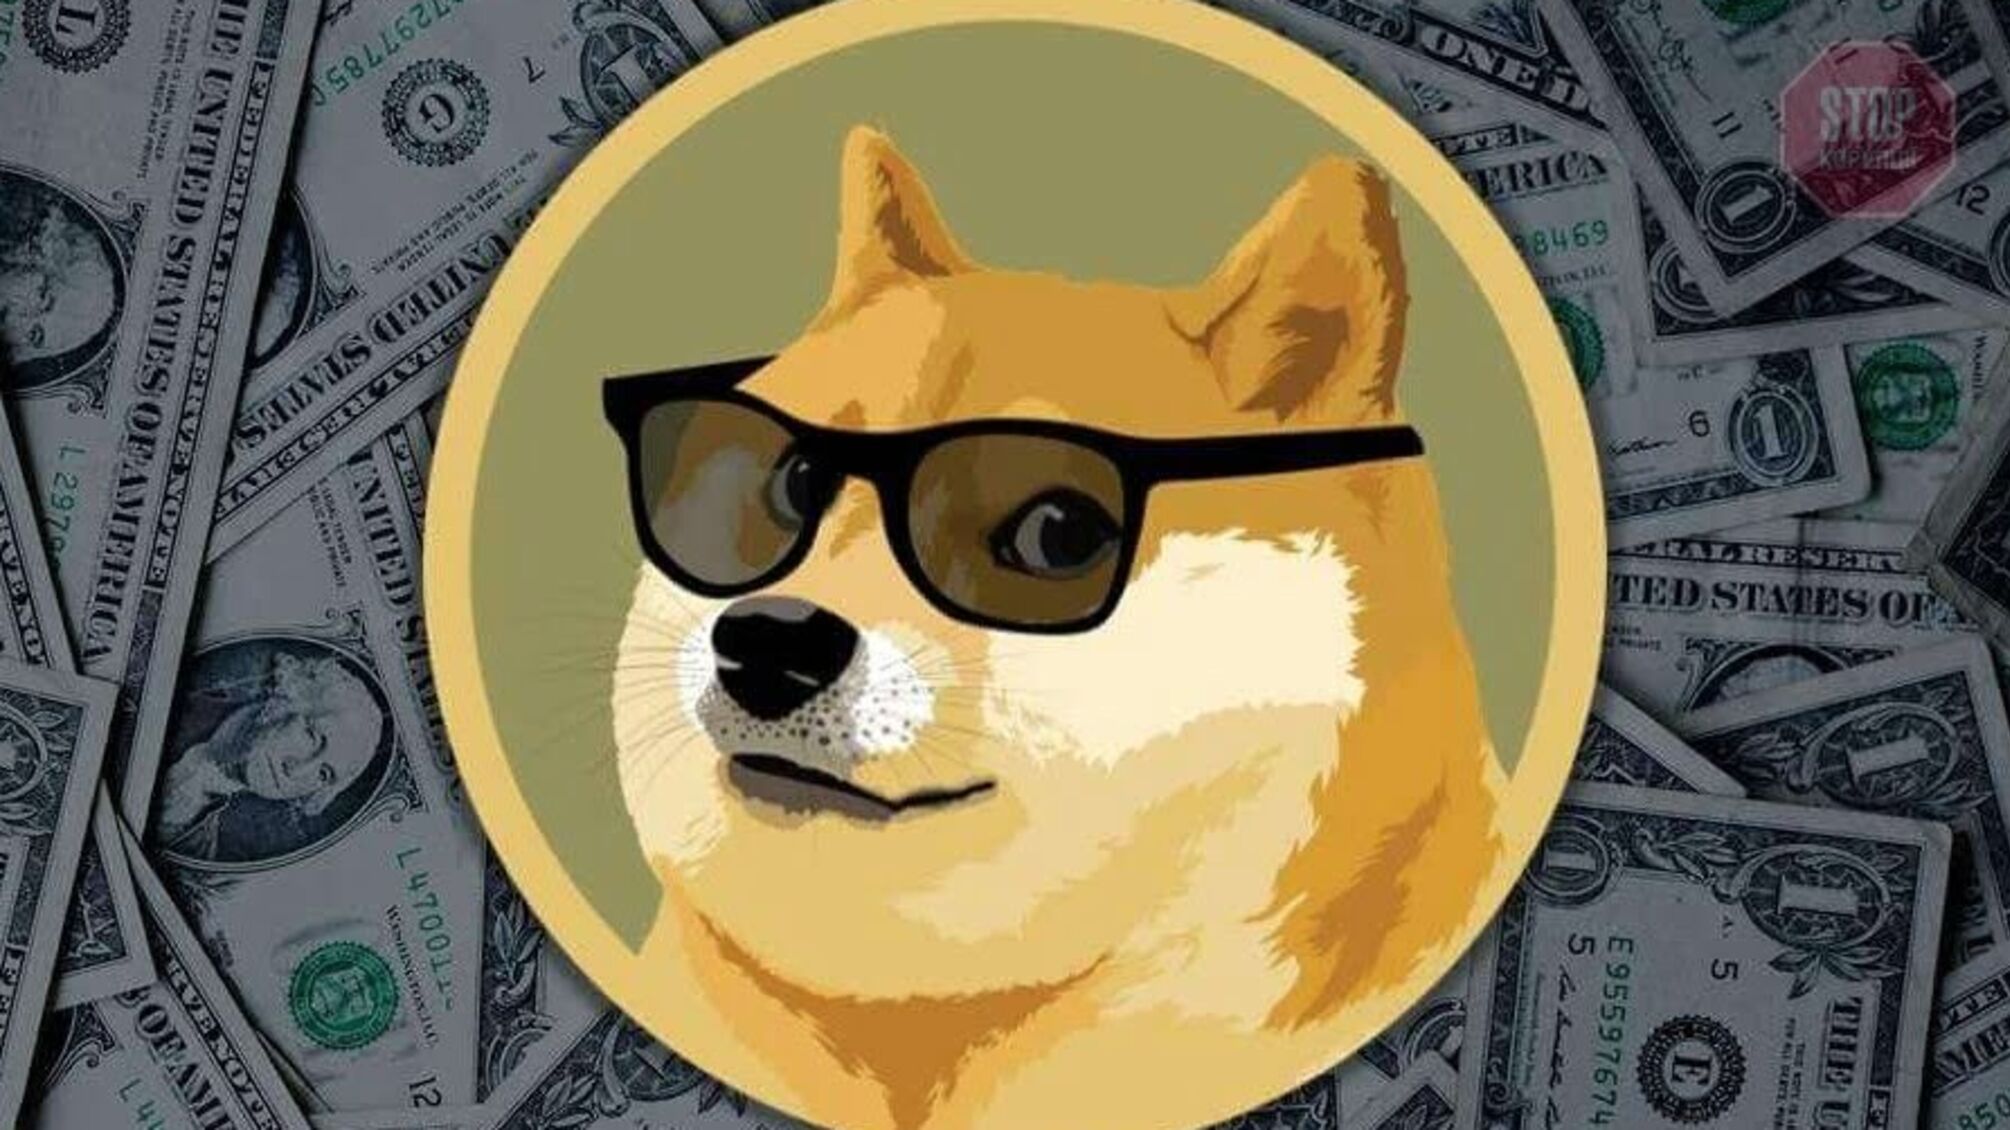 Цена Dogecoin обновила исторический максимум выше отметки $0,14